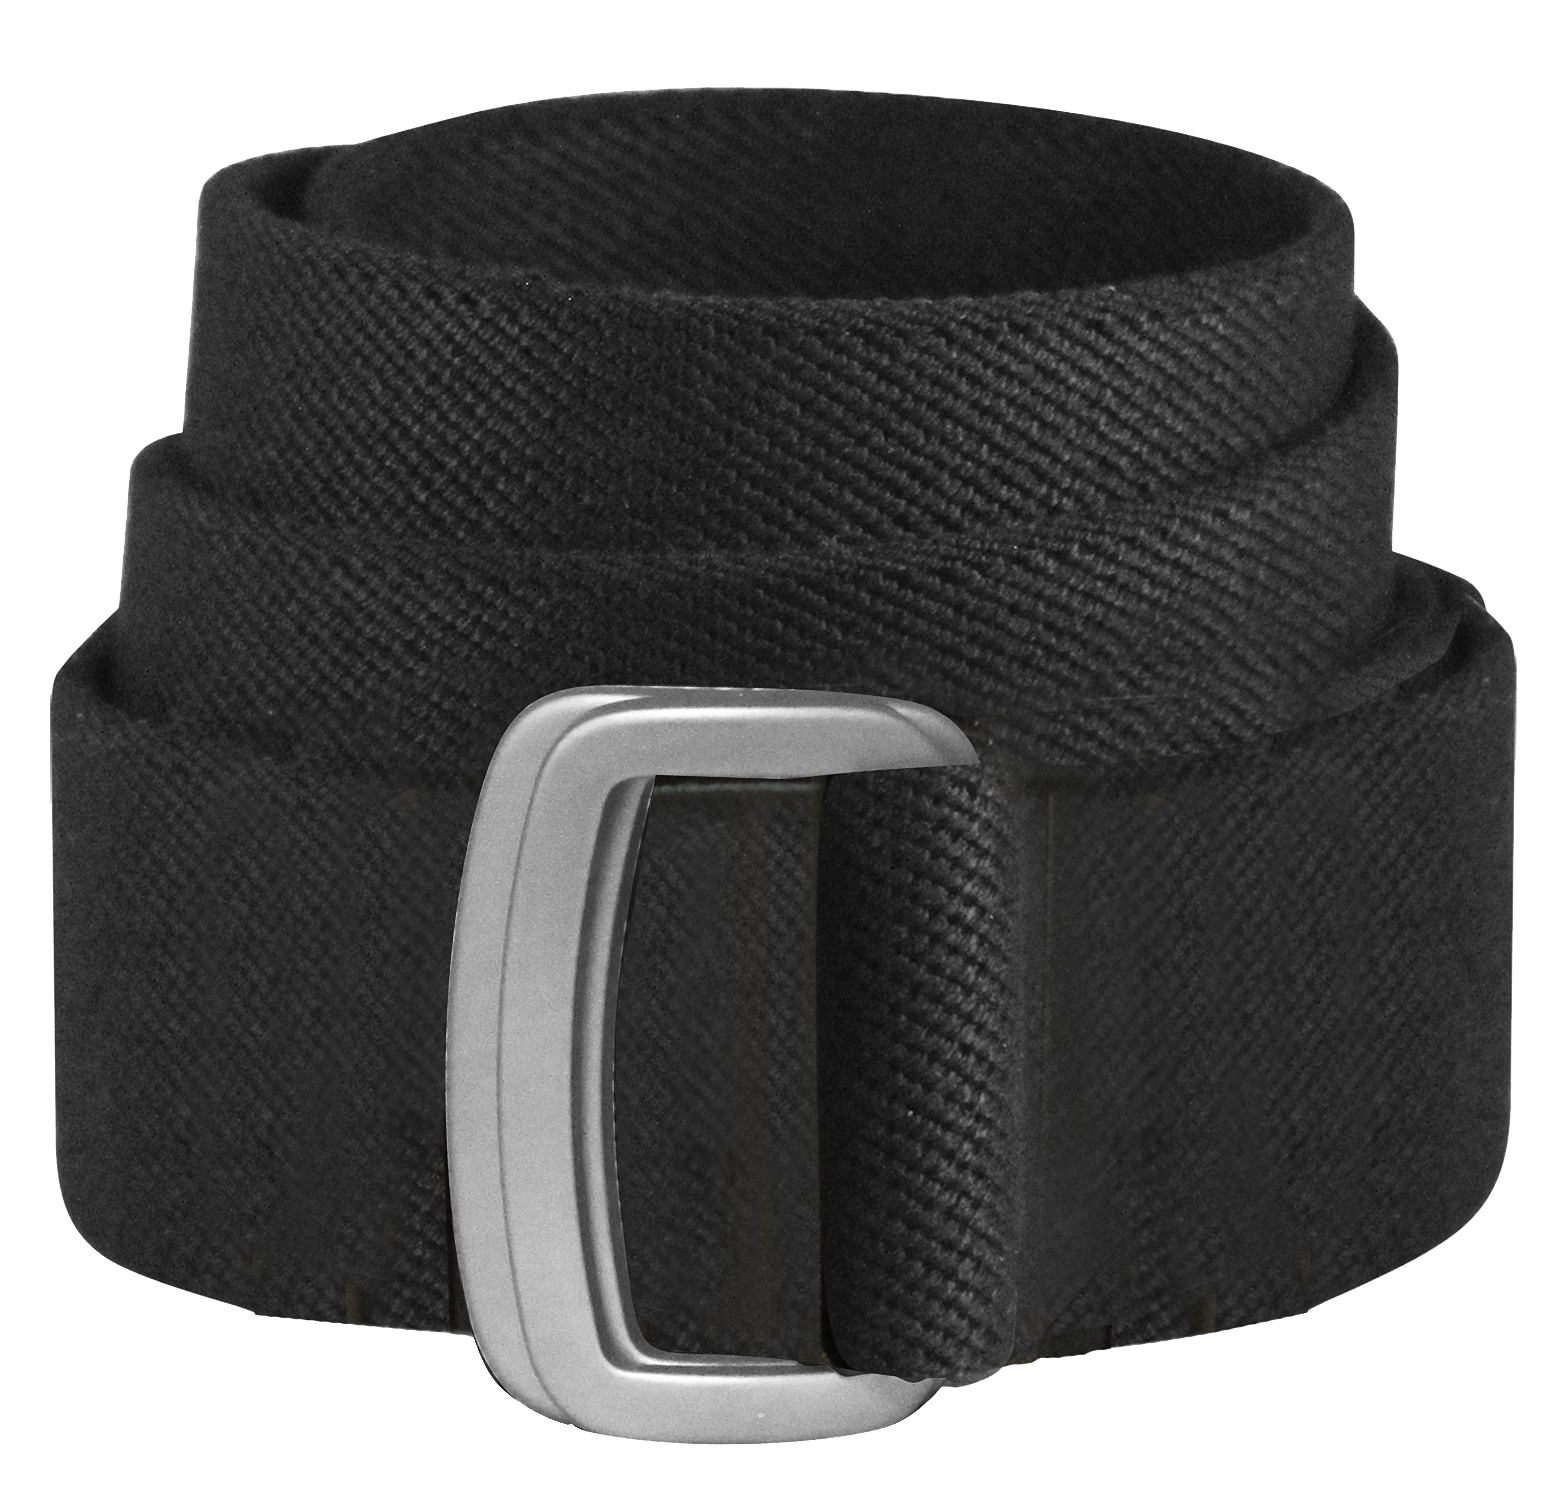 Bison Designs Subtle Cinch Belt for Men - Black - M